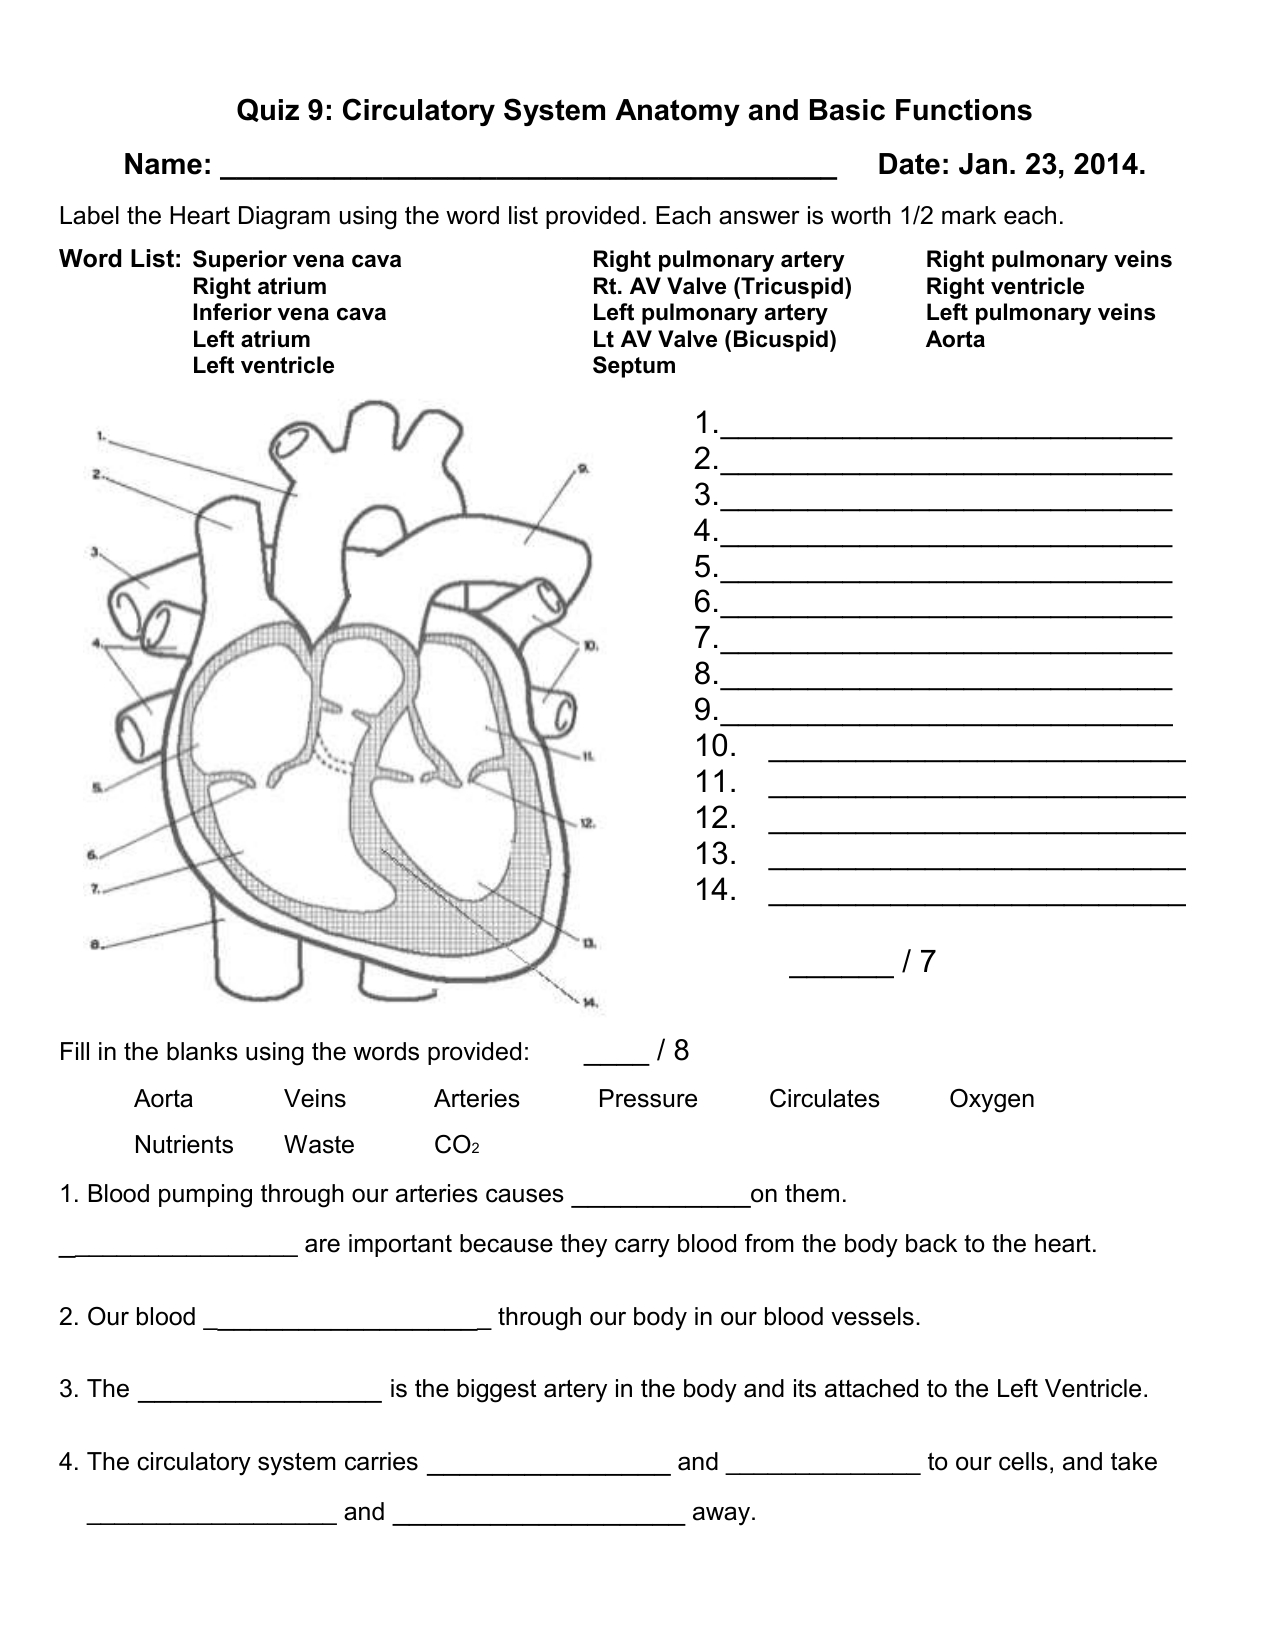 Main Parts Of Circulatory System